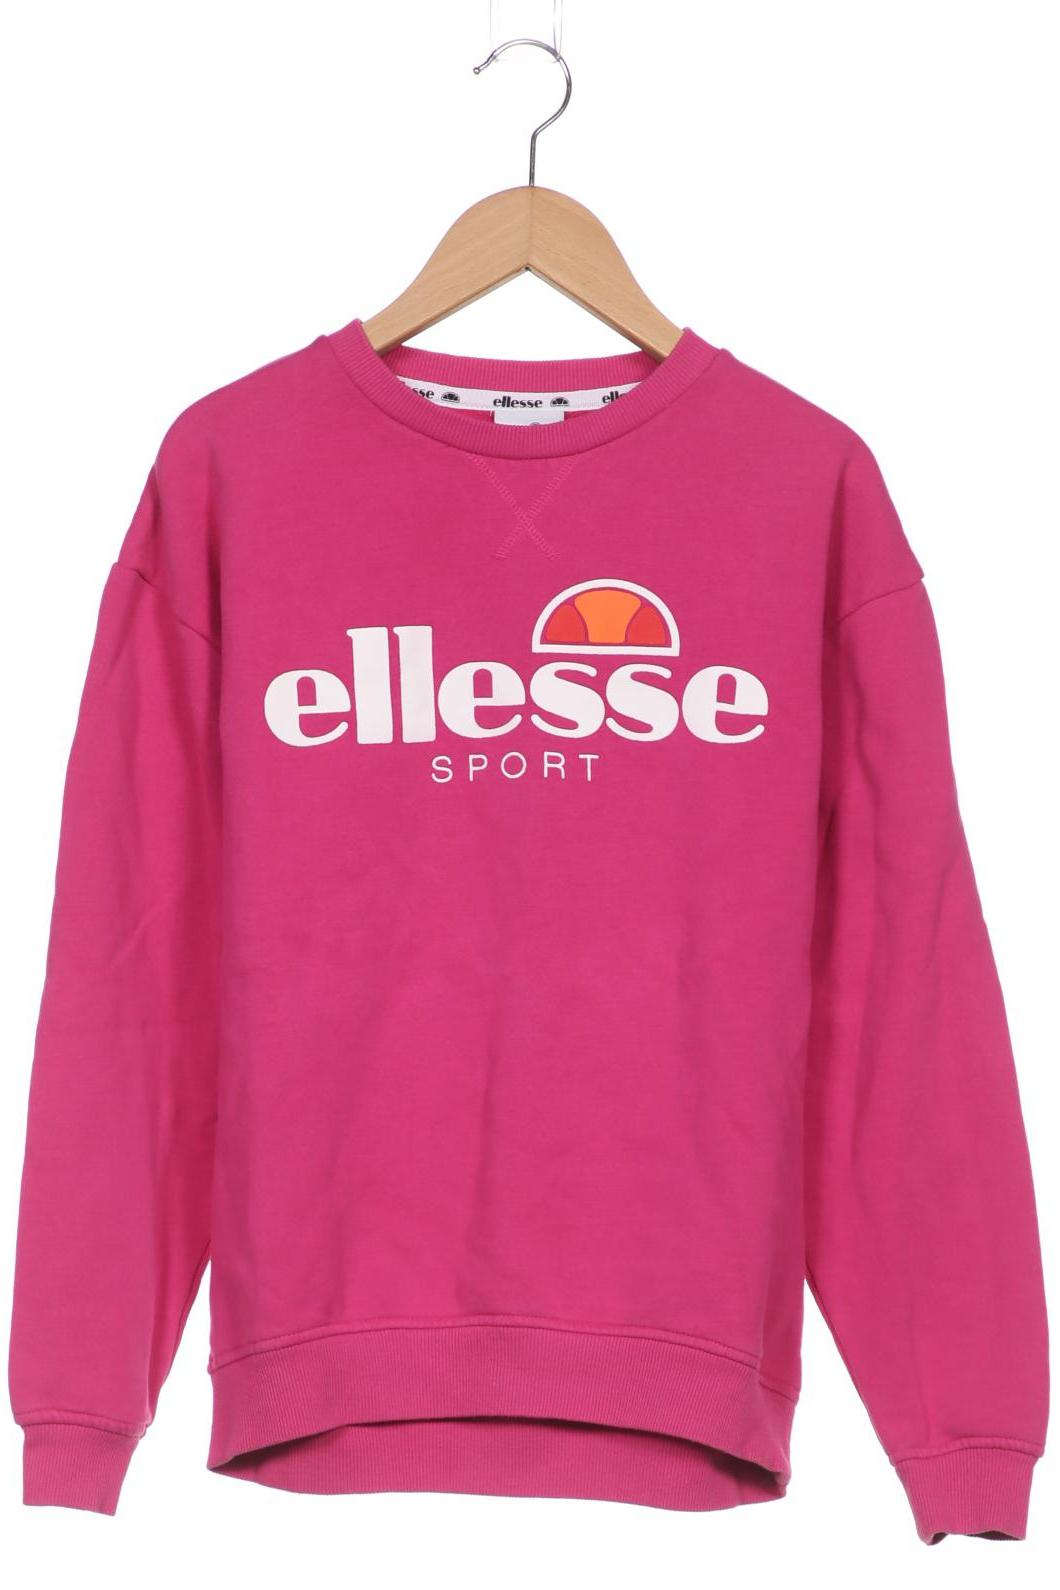 ellesse Damen Sweatshirt, pink von Ellesse